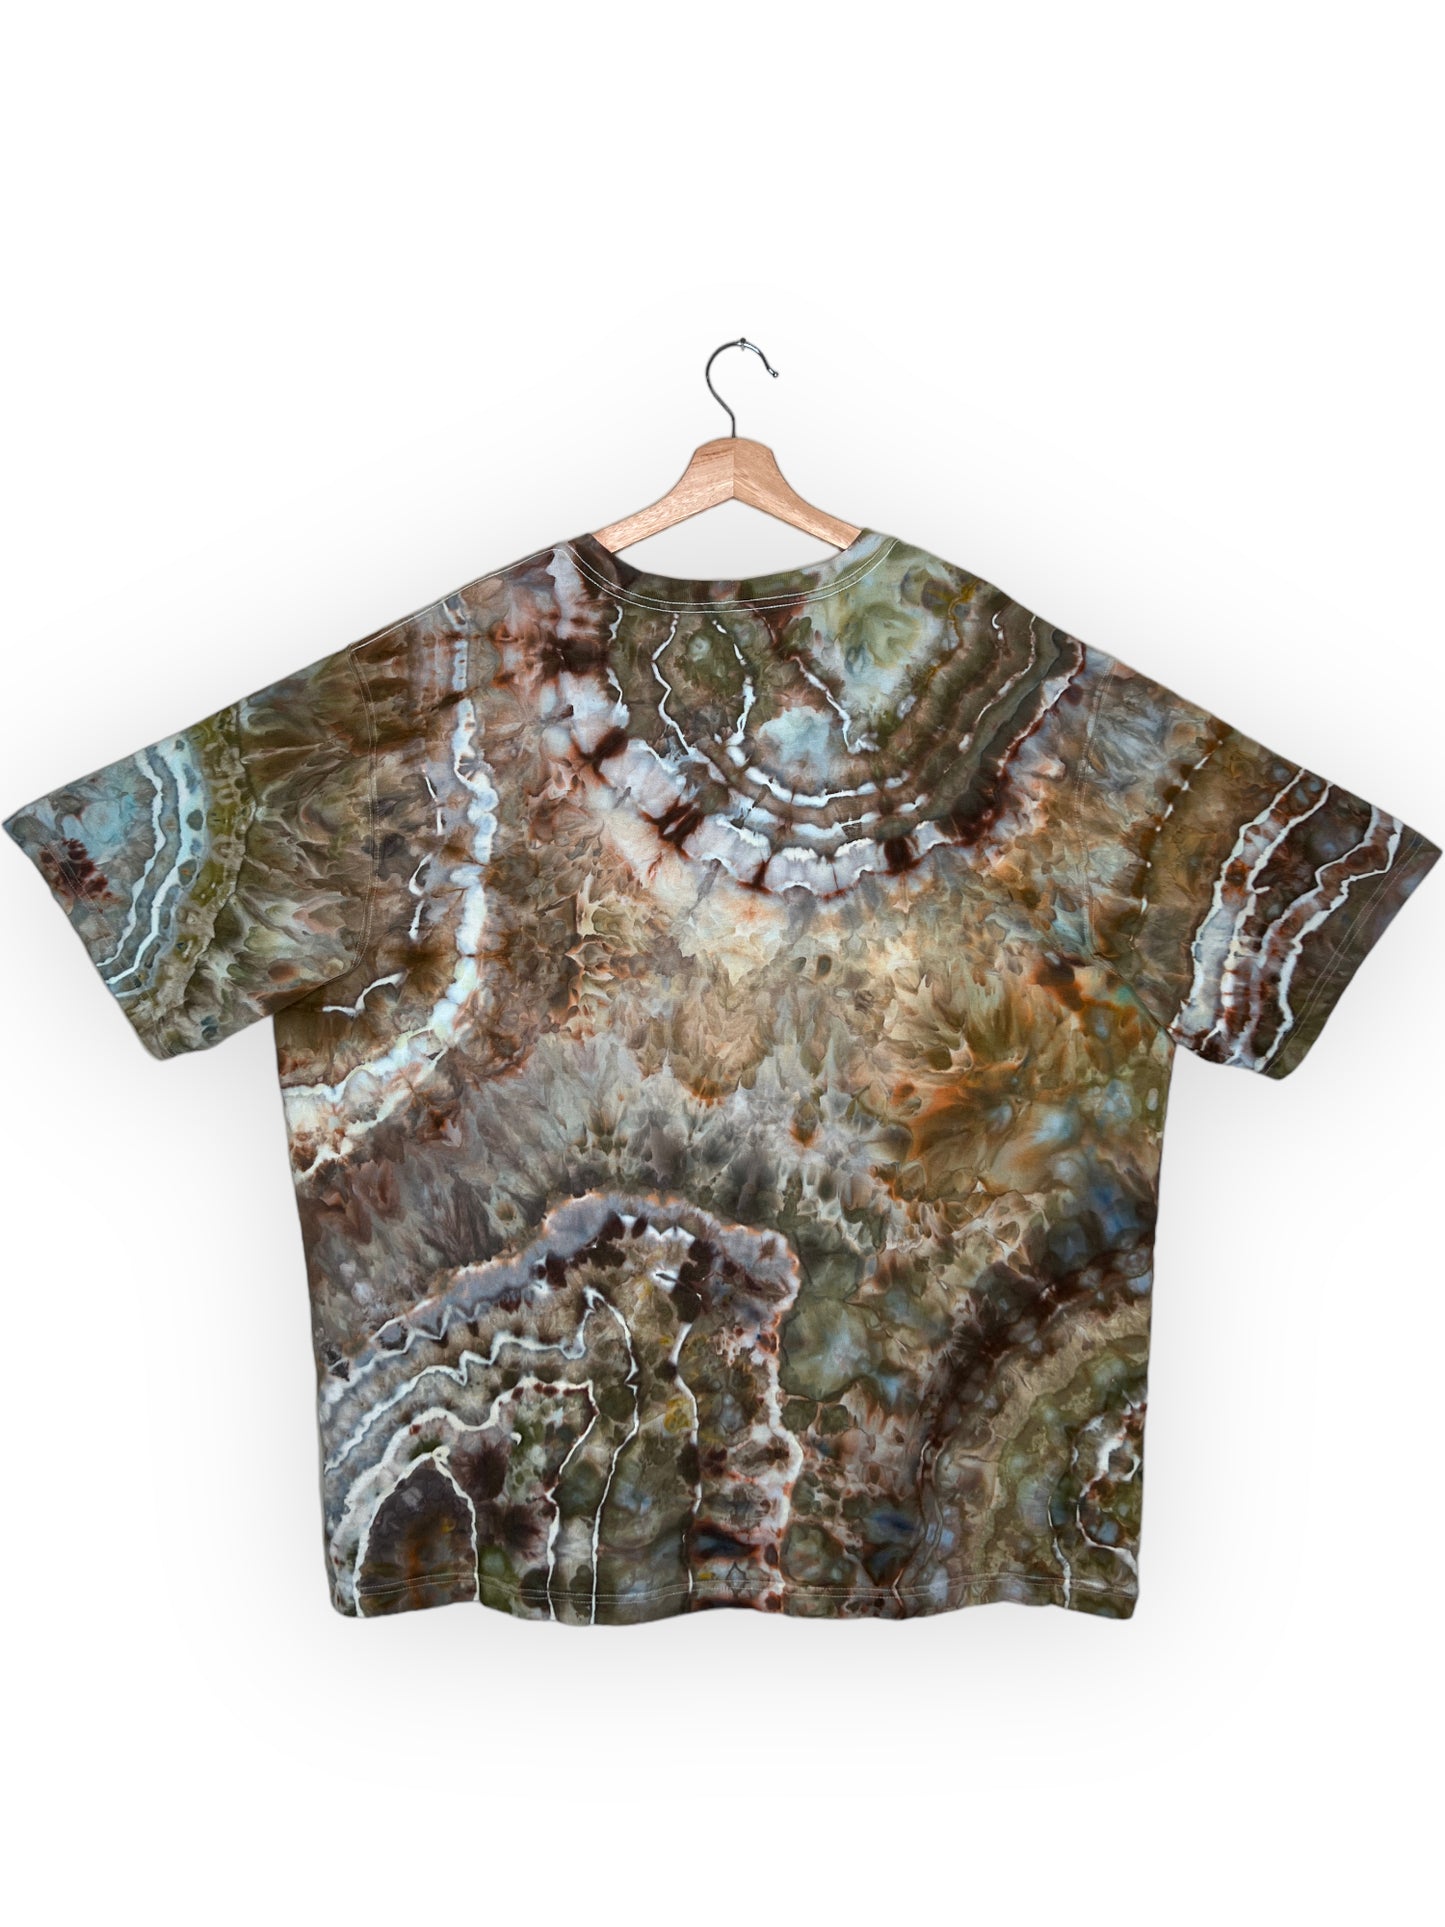 Carhartt Geode T-Shirt (XXL)